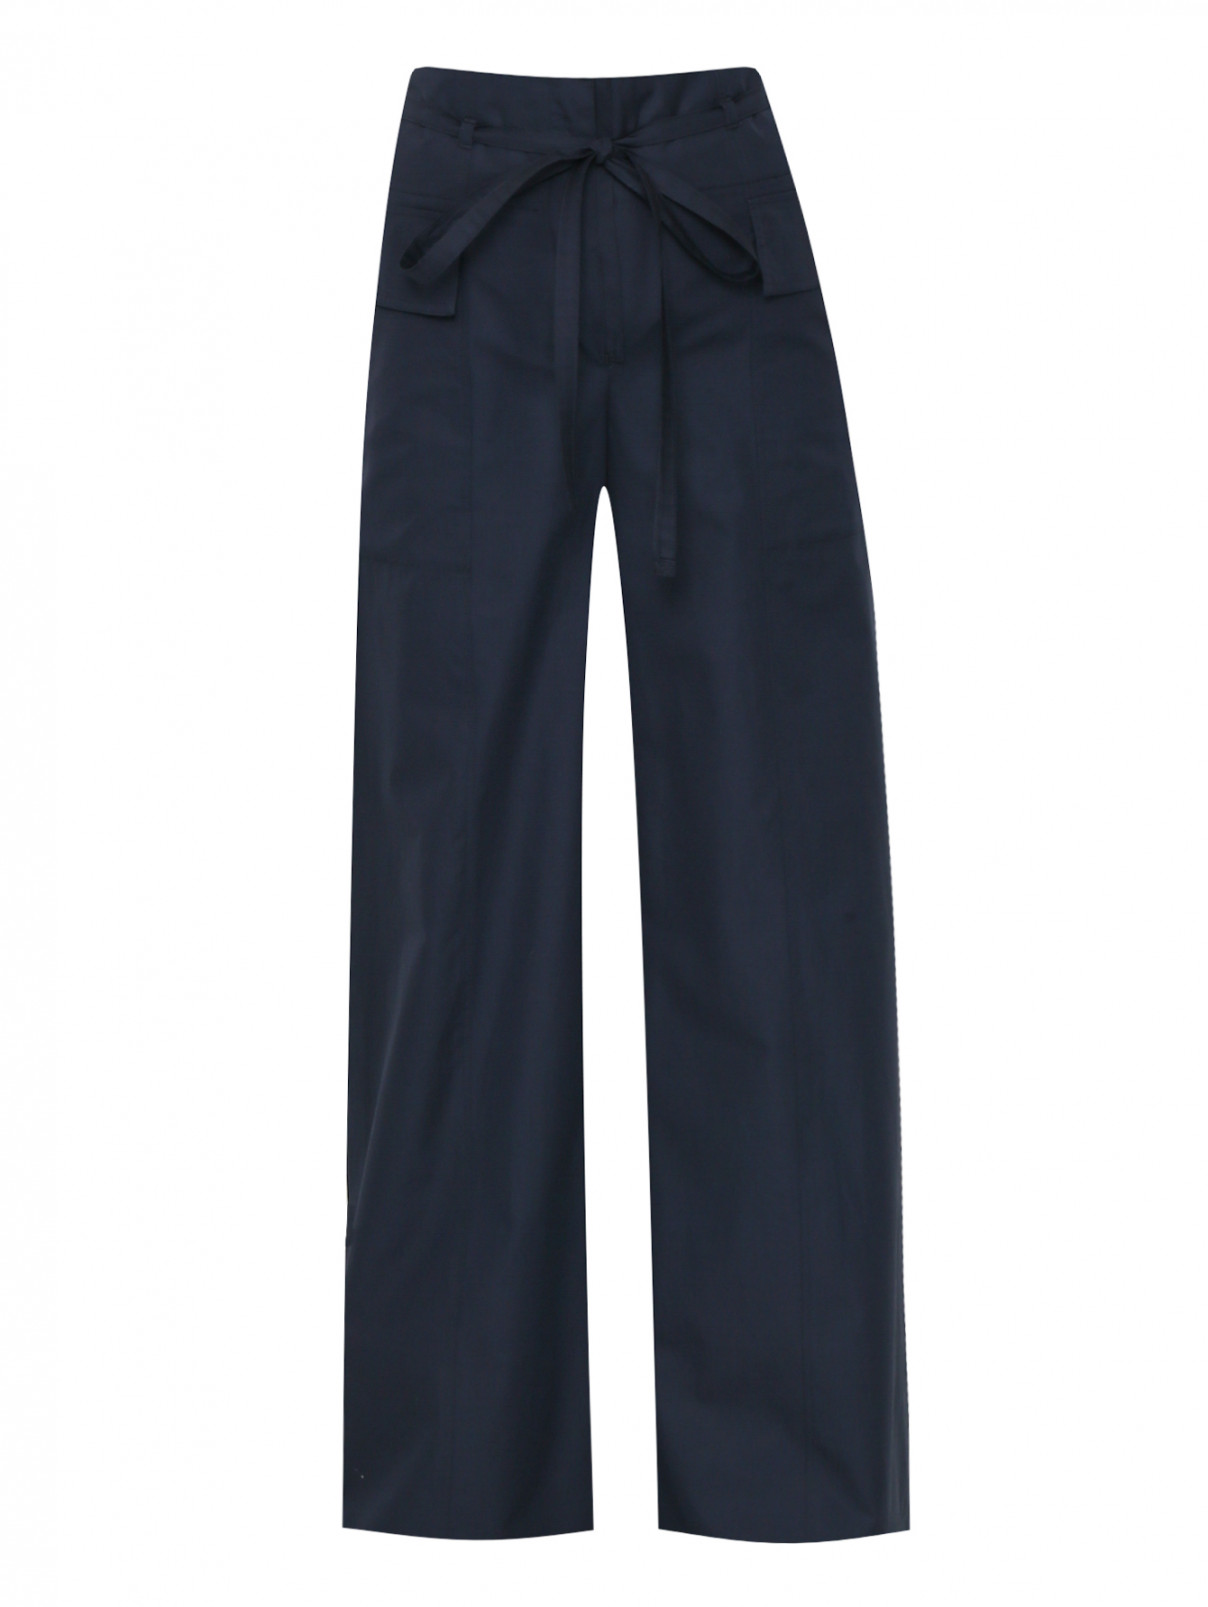 Широкие брюки из хлопка с накладными карманами Sportmax  –  Общий вид  – Цвет:  Синий